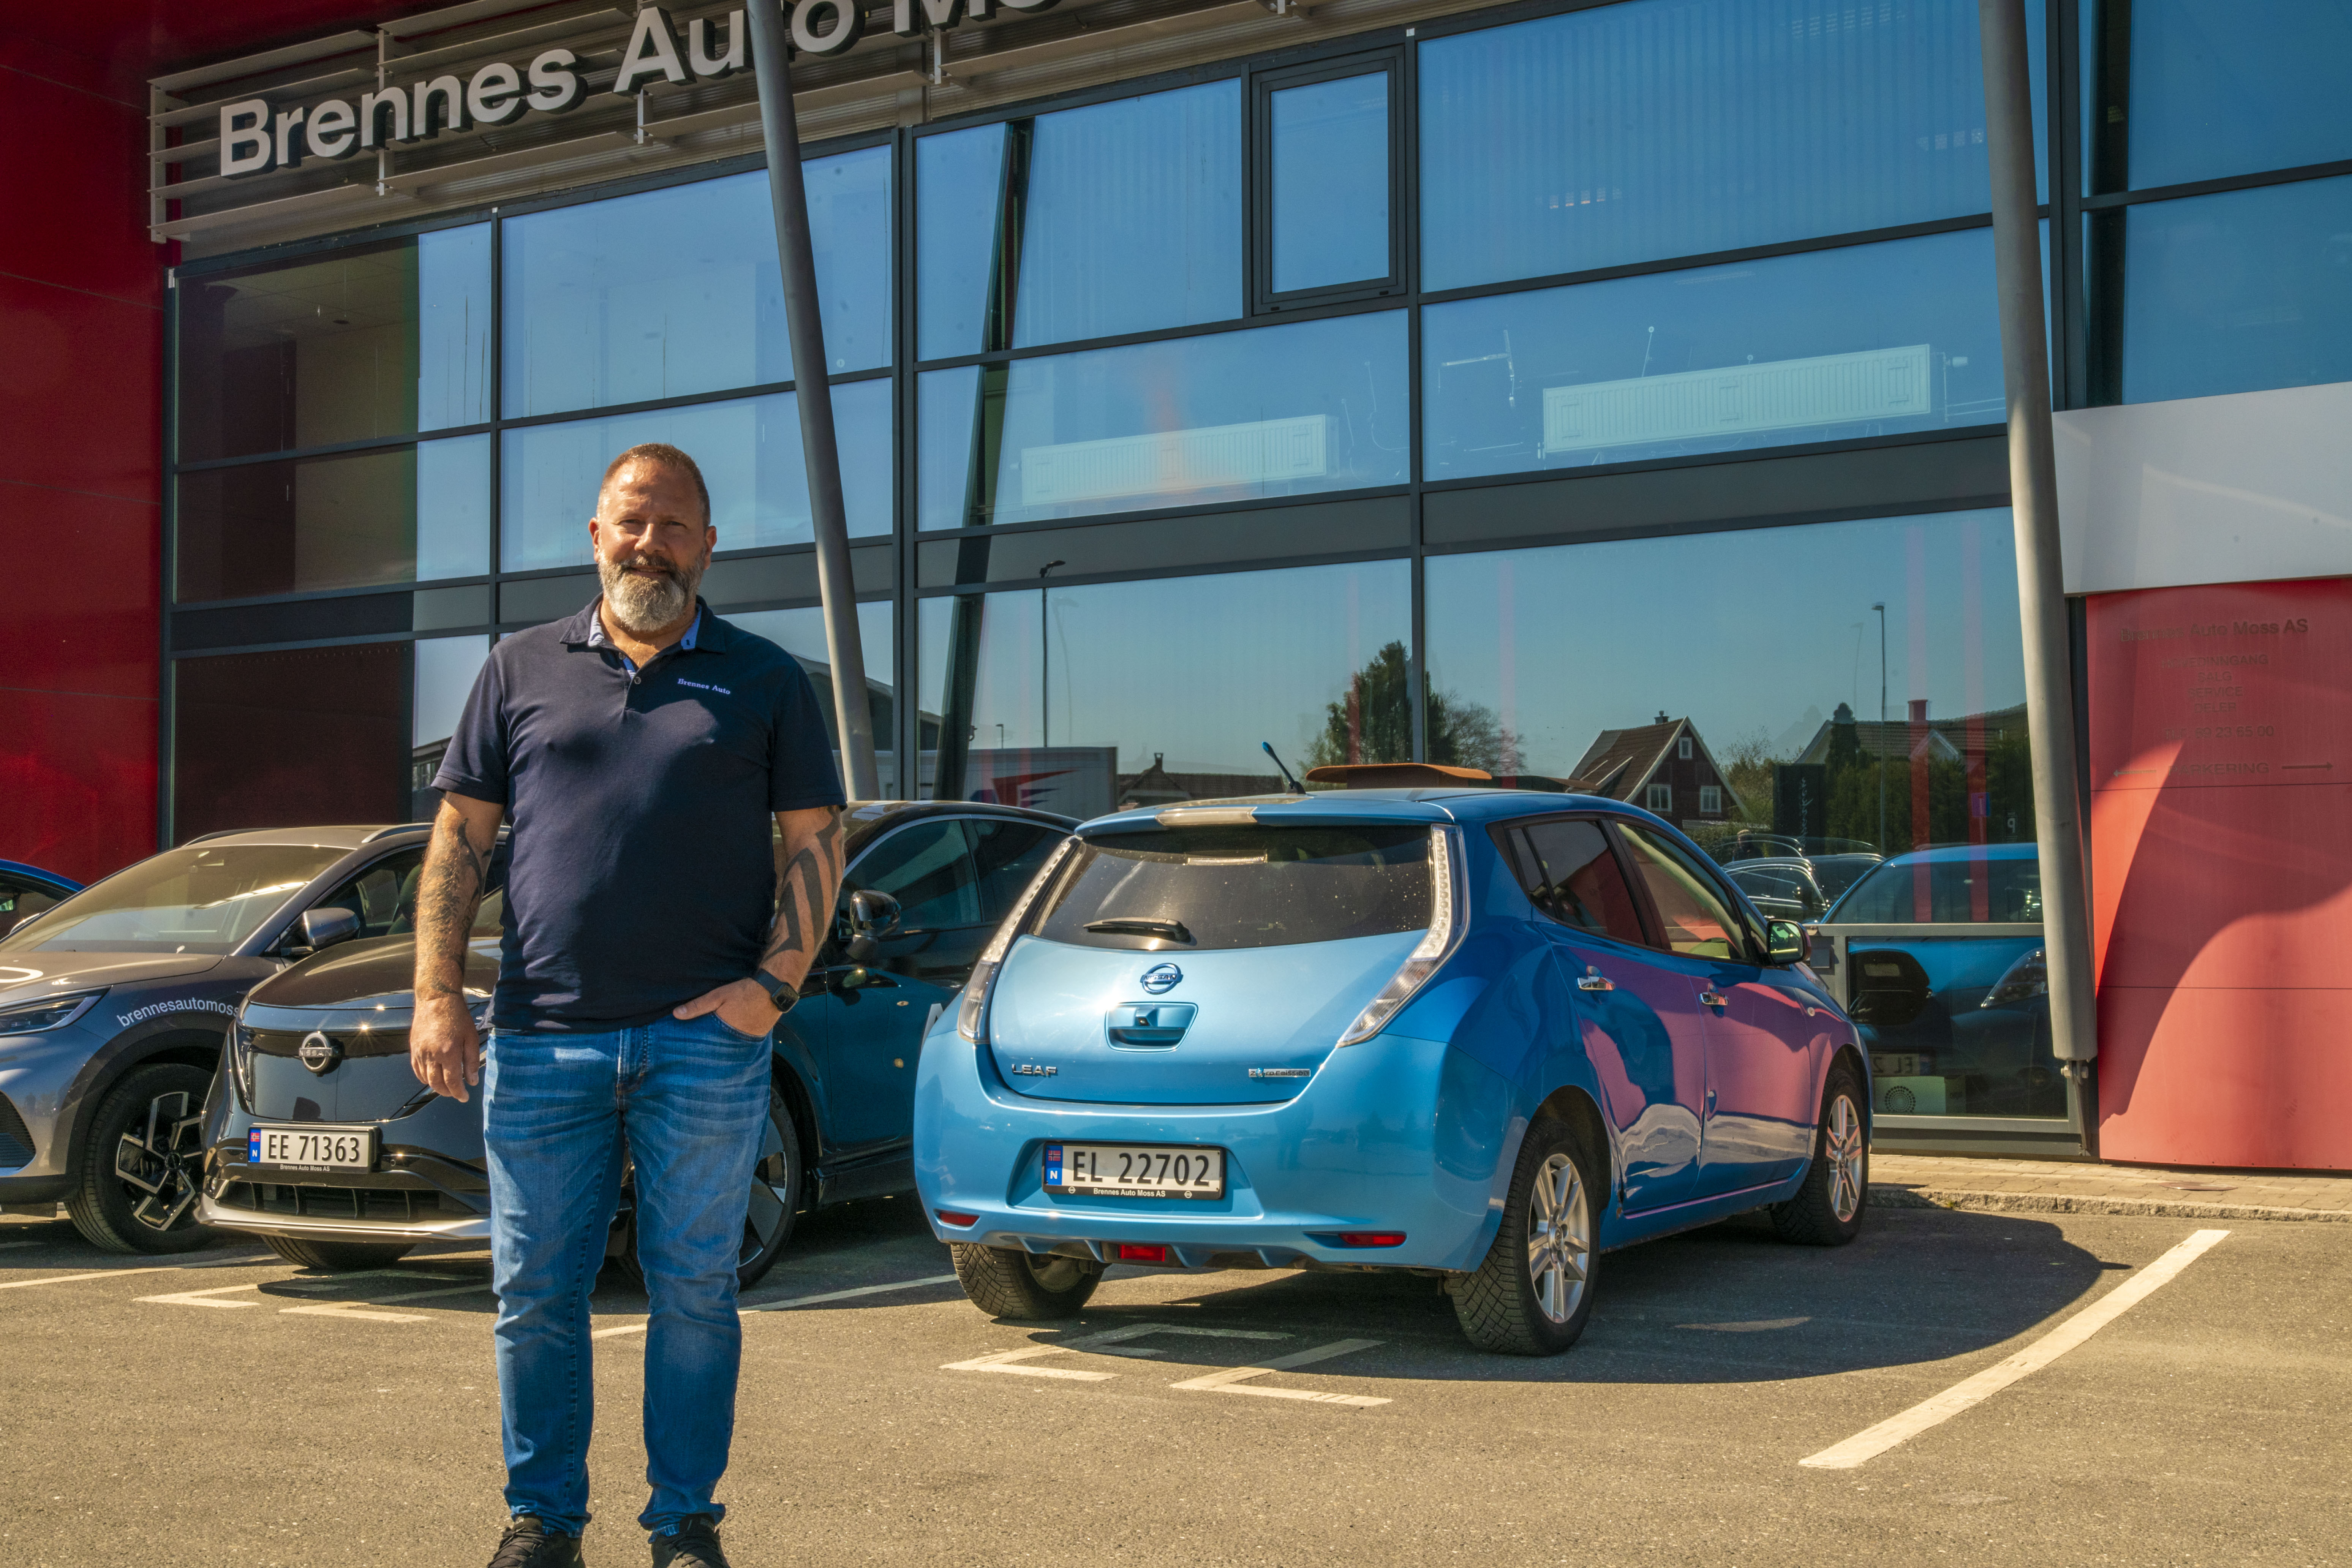 Brennes Auto på Høyda i Moss satser på grønn energi og solceller